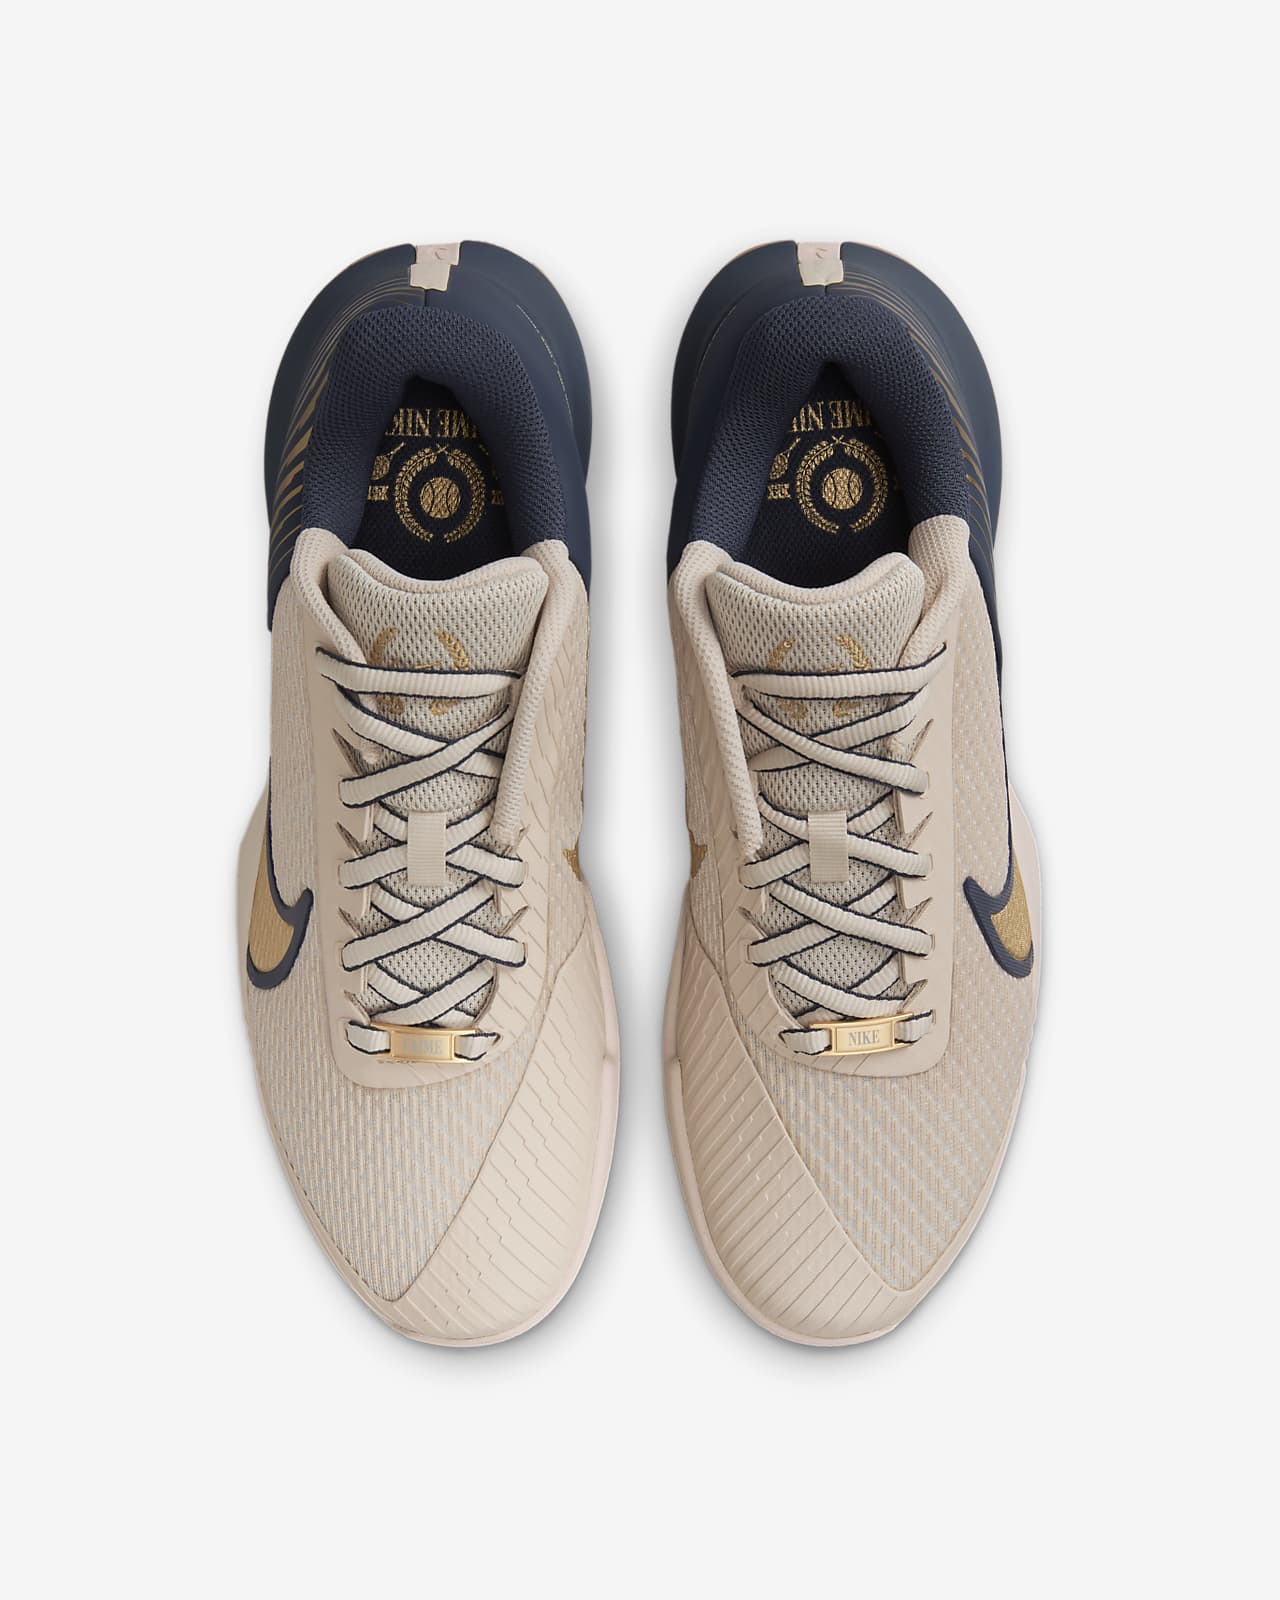 Nike Air Zoom Vapor Pro 2 Premium Men's Clay Court Tennis Shoes